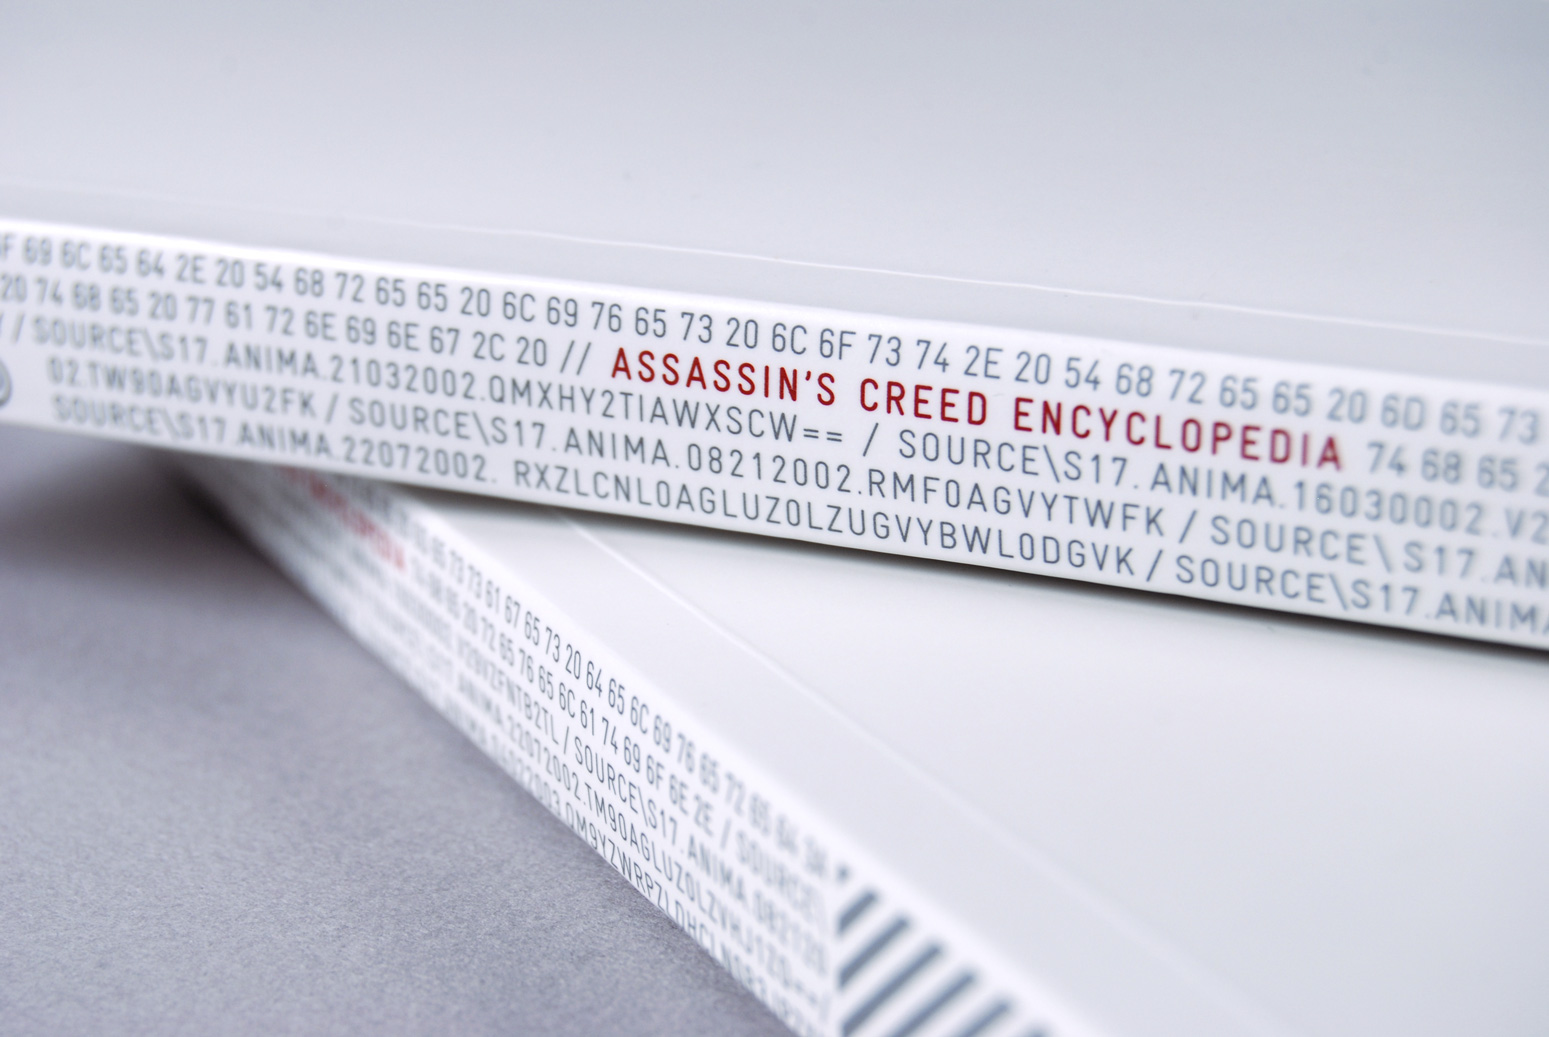 Assassin’s Creed Encyclopedia